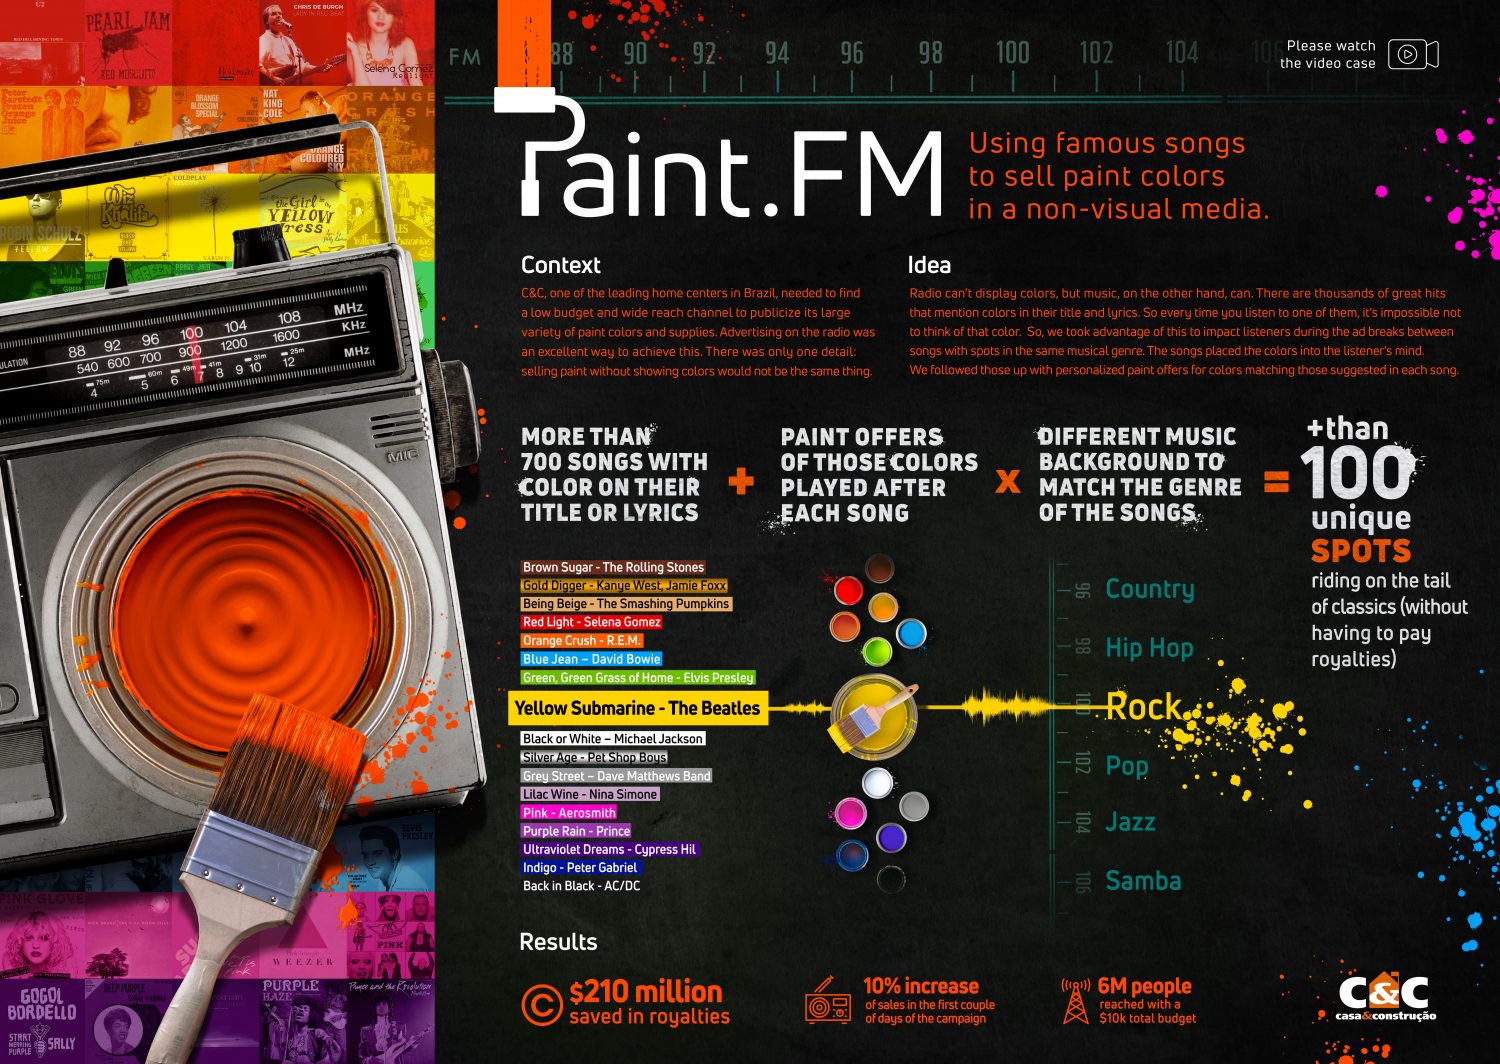 2021-CC-Paint FM-Board-Publicis Brazil-jpg